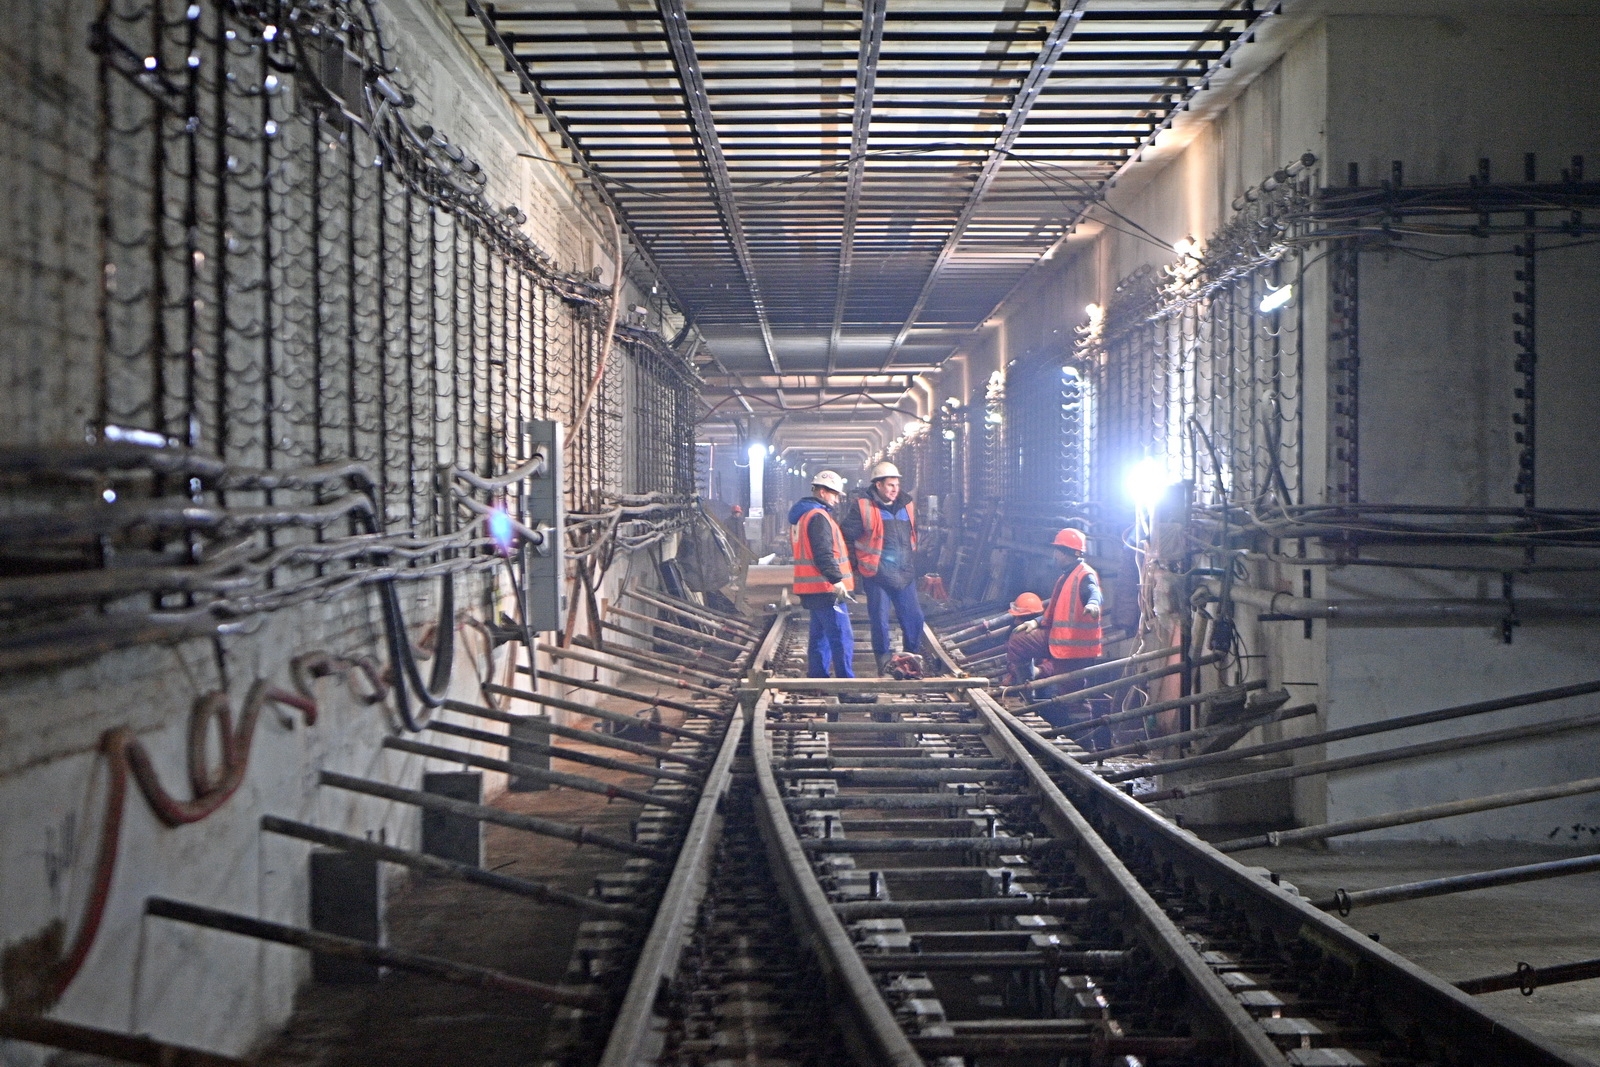 Стройка трех станций Троицкой линии метро подходит к концу 